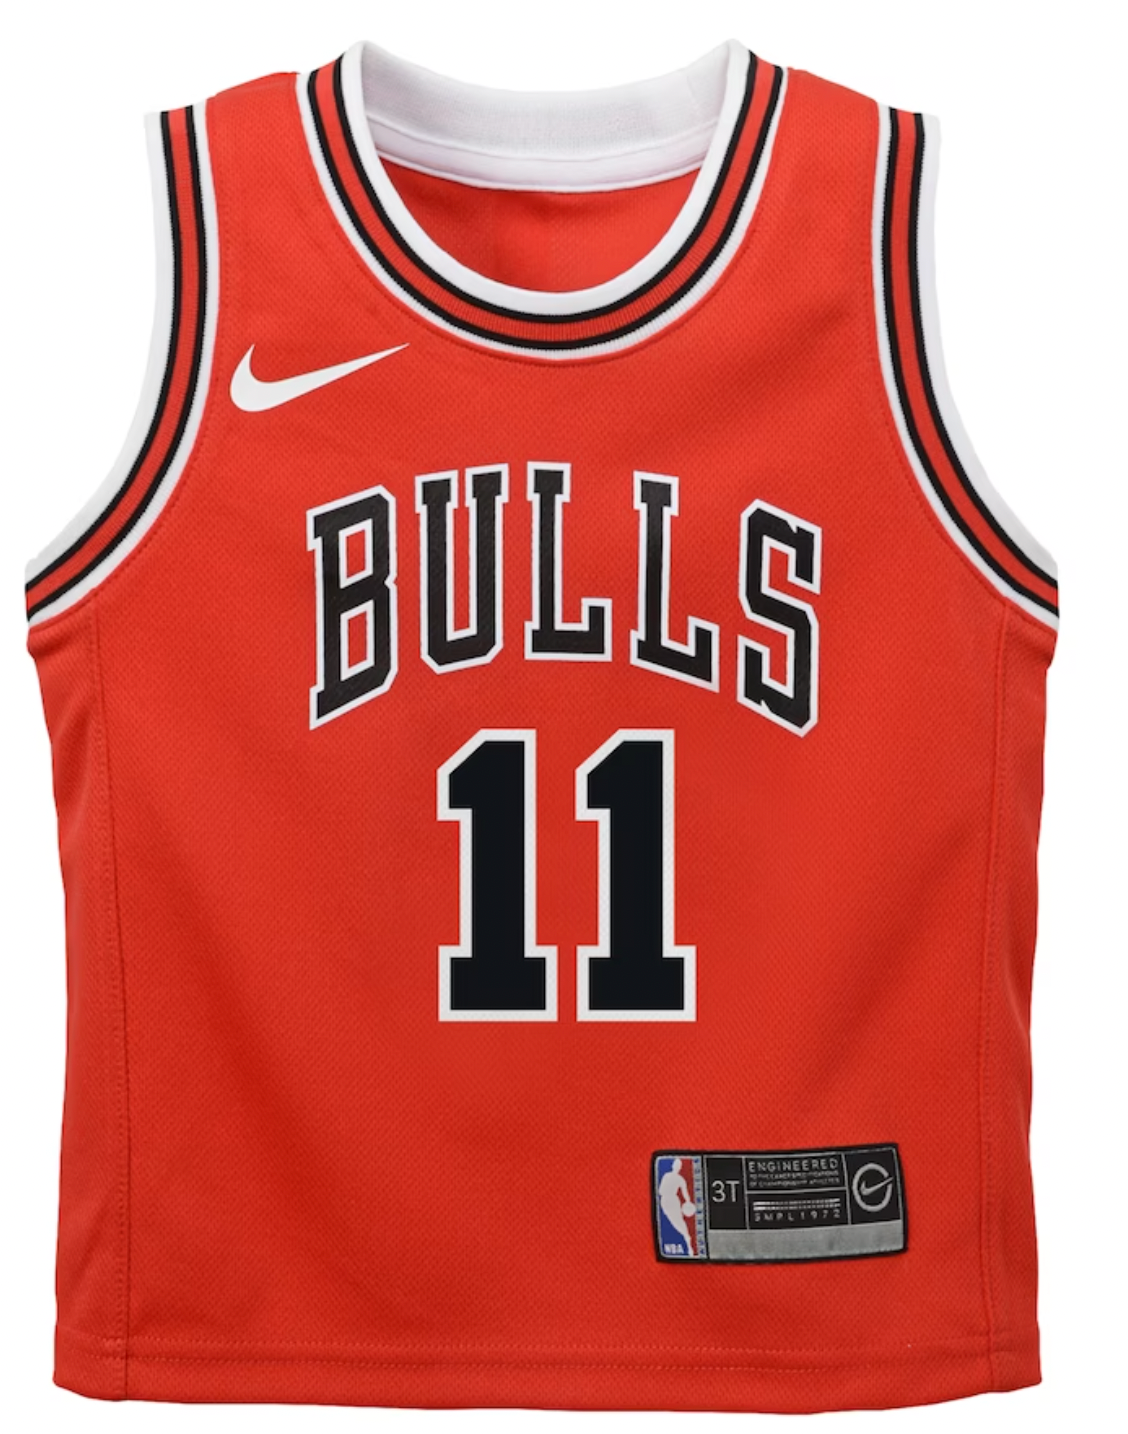 New Chicago Bulls DeMar DeRozan Jersey Size XL! Singapore